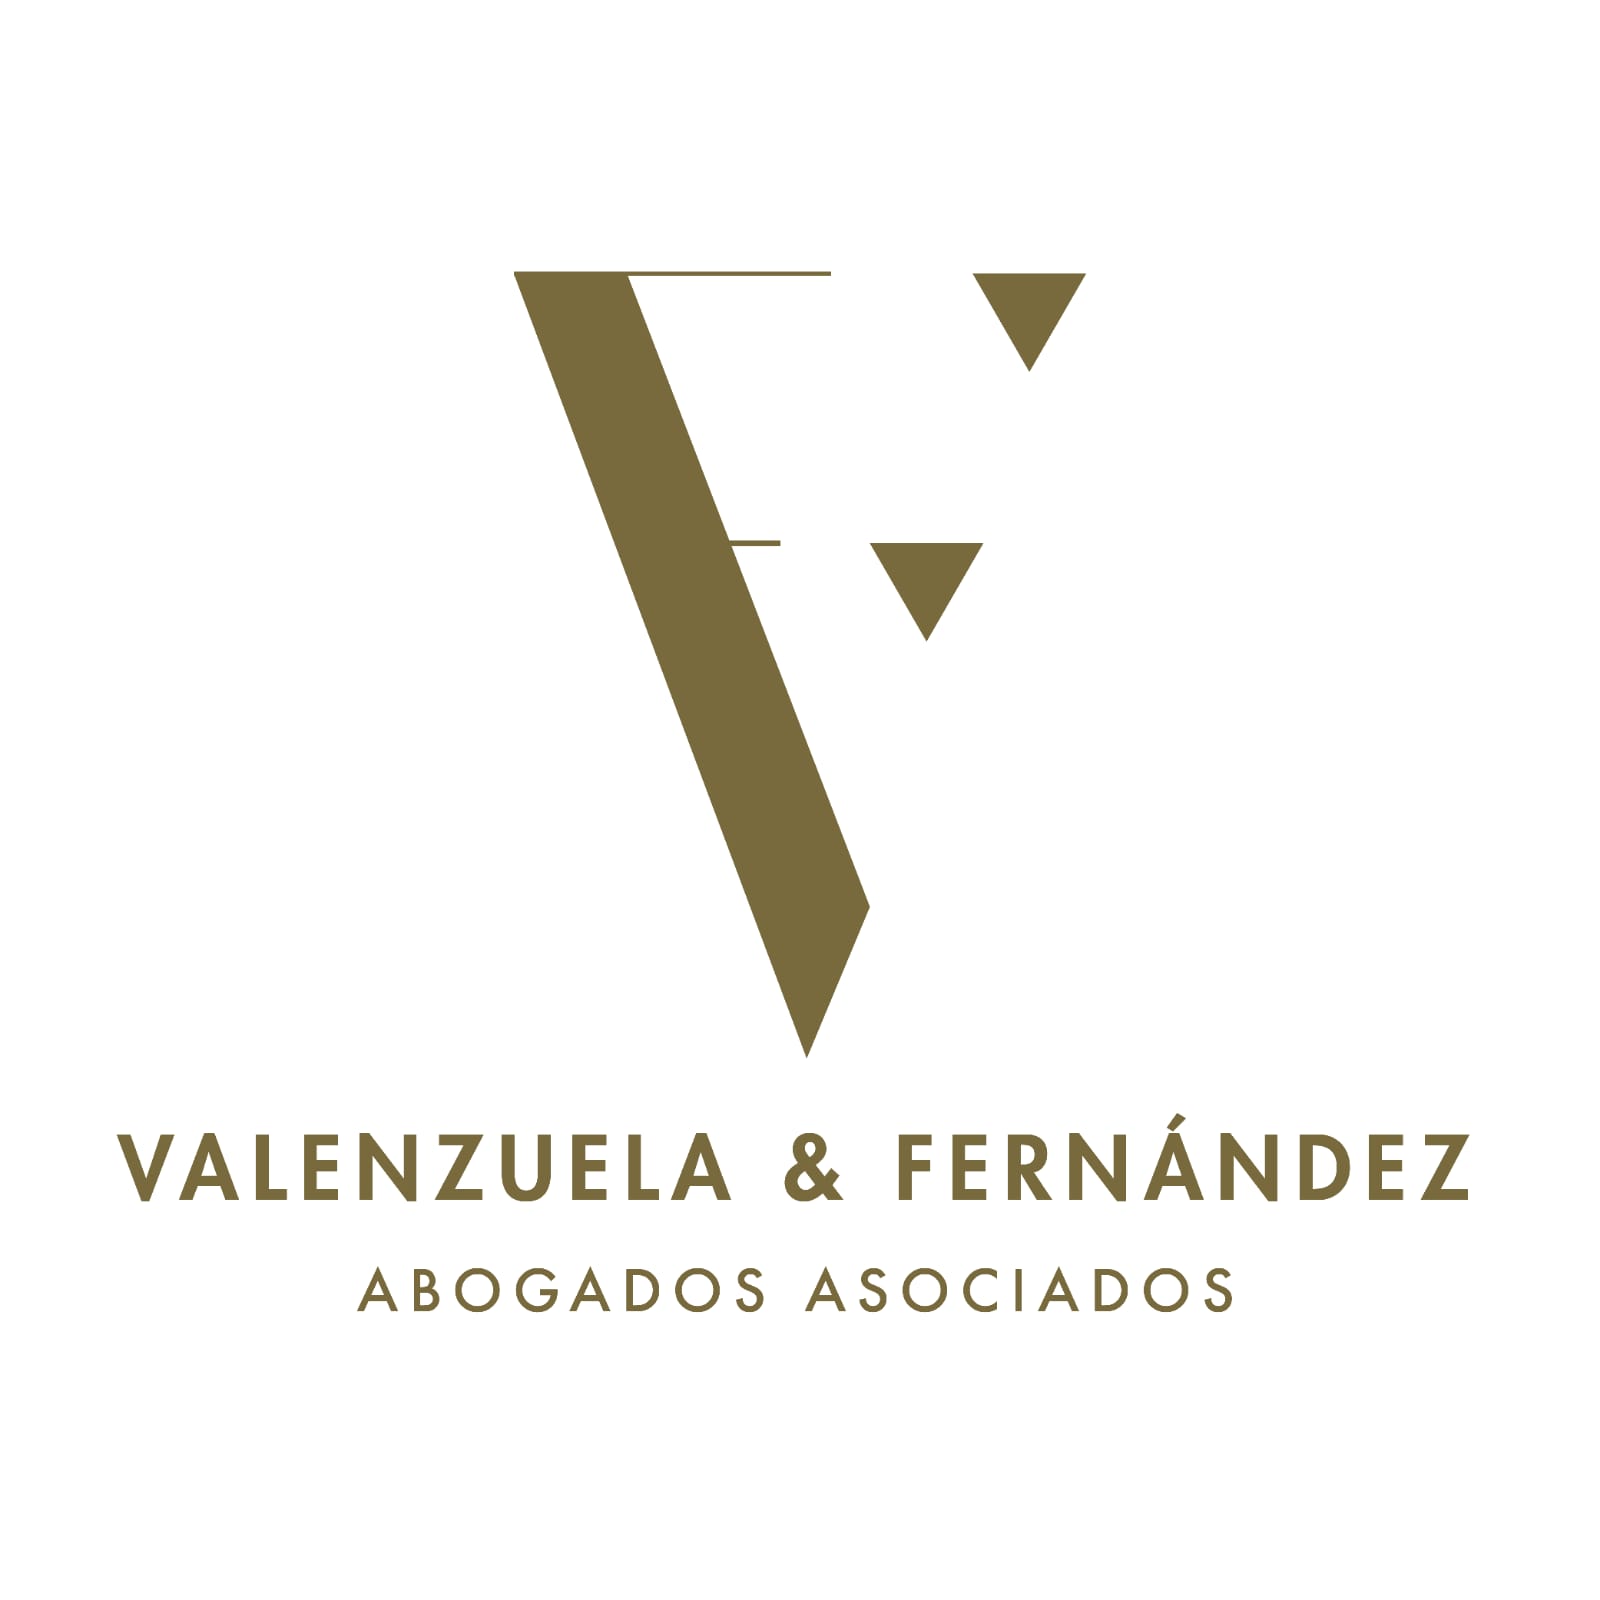 VALENZUELA Y FERNANDEZ ABOGADOS ASOCIADOS